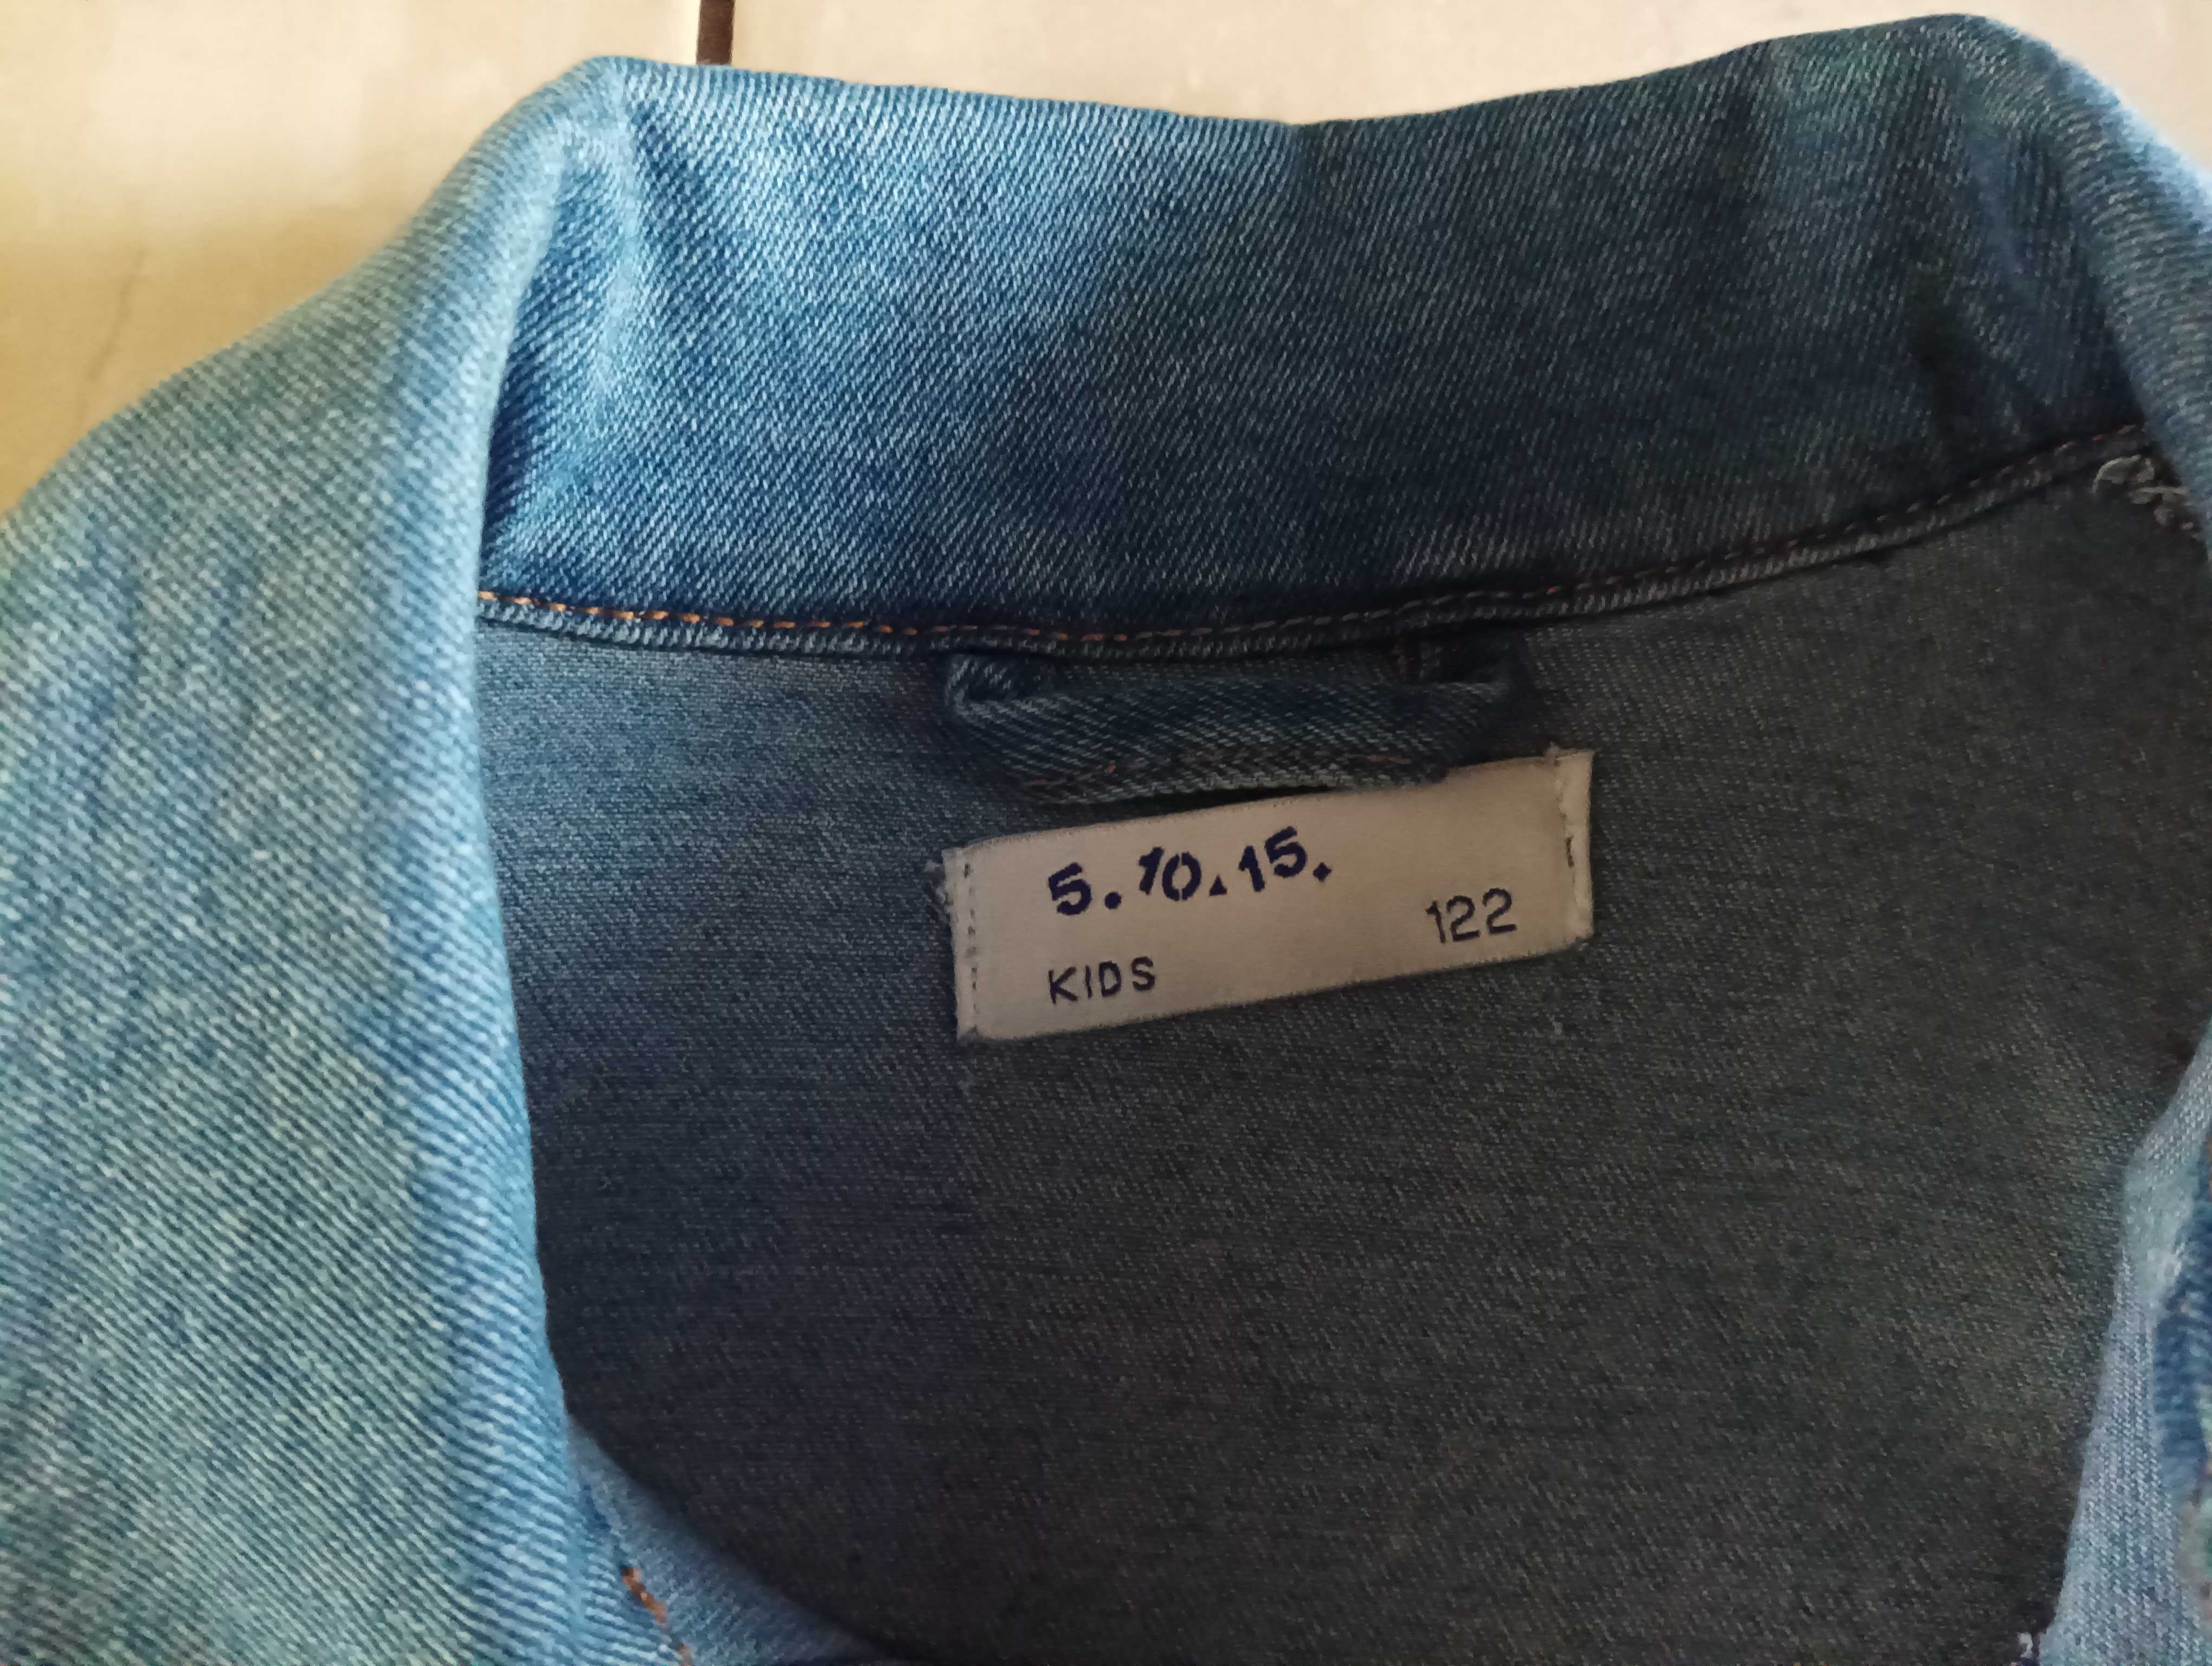 Jeansowa kurtka dla dziewczynki w rozmiarze 122 z 5.10.15